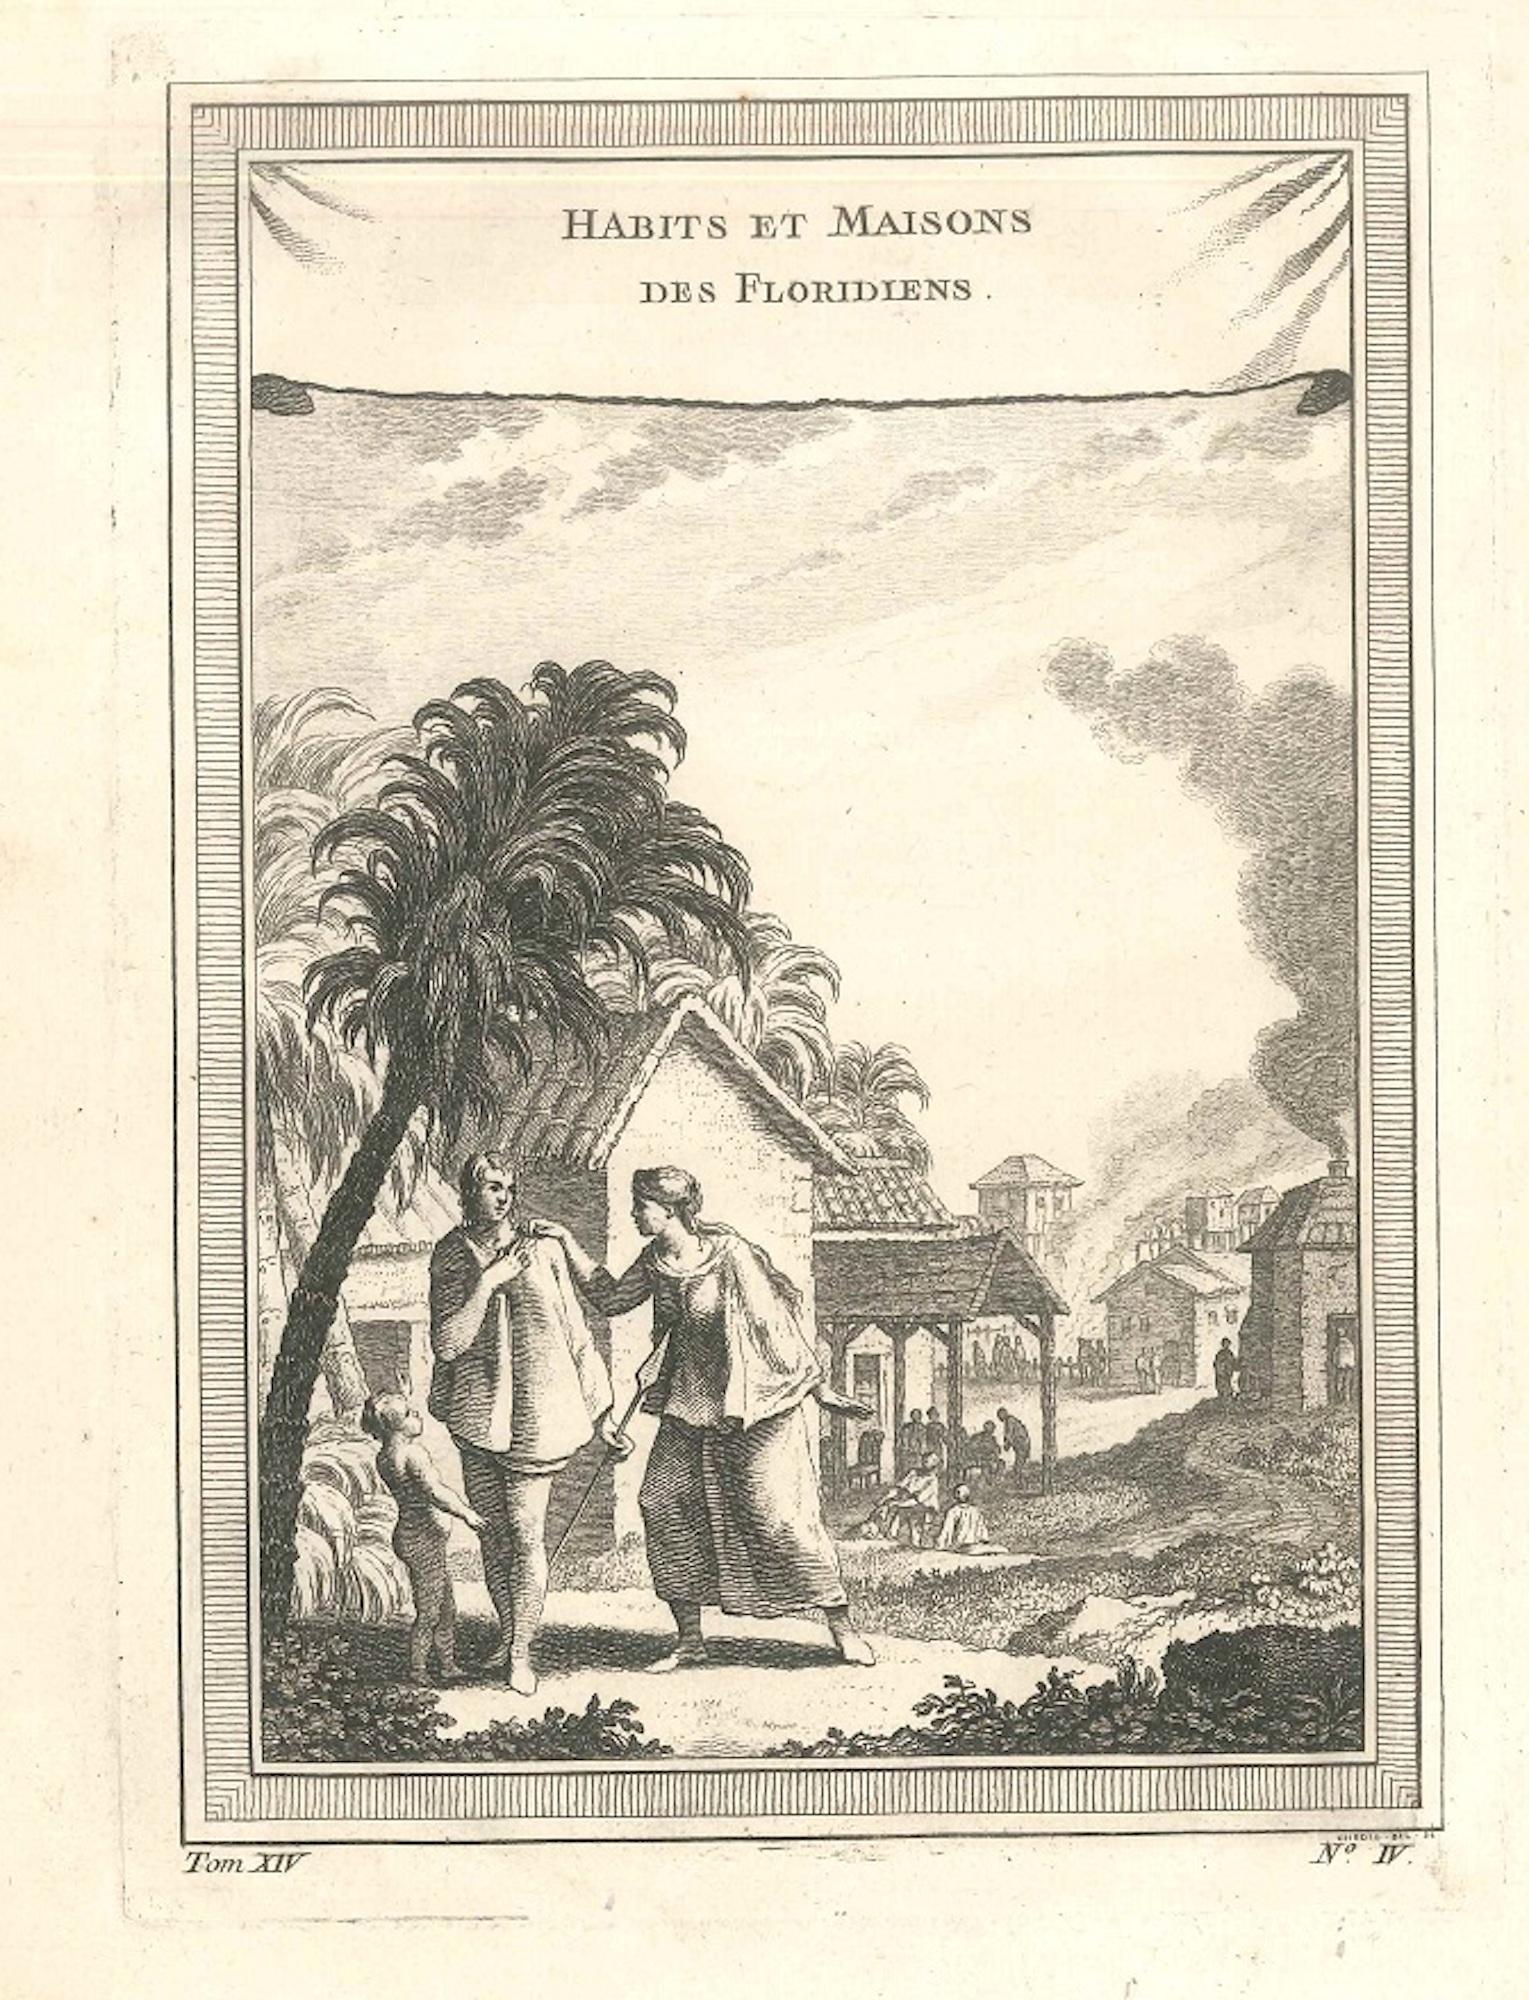 Jacques-Nicolas Bellin Figurative Print - Habits et Maisons des Floridiens - Original Etching by J.-N. Bellin - 1747